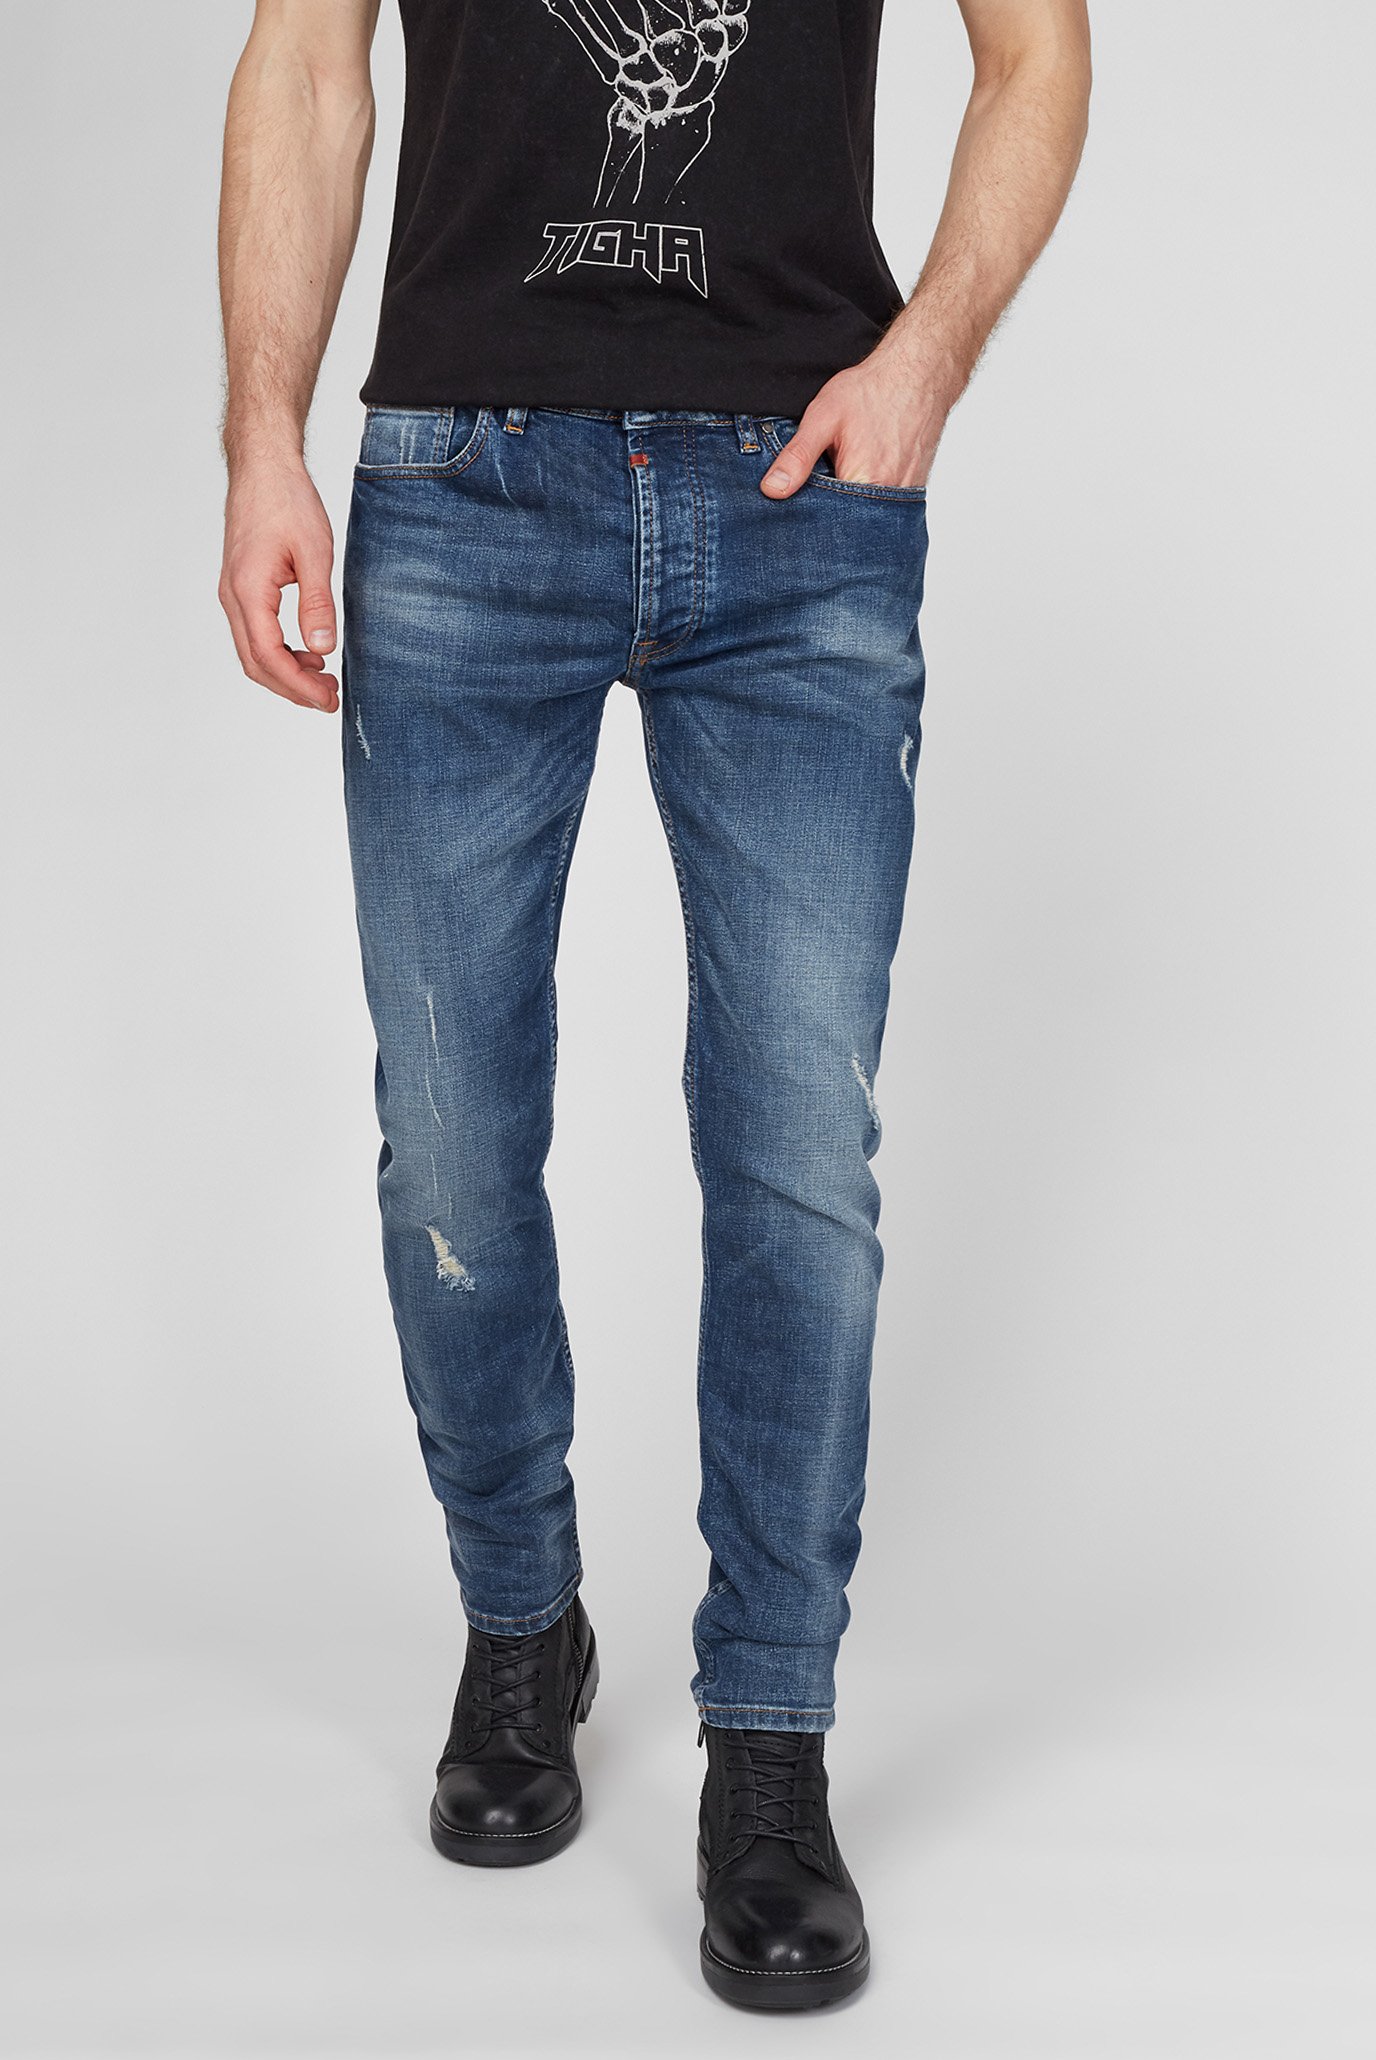 Чоловічі сині джинси Morten 9994 Repaired 1